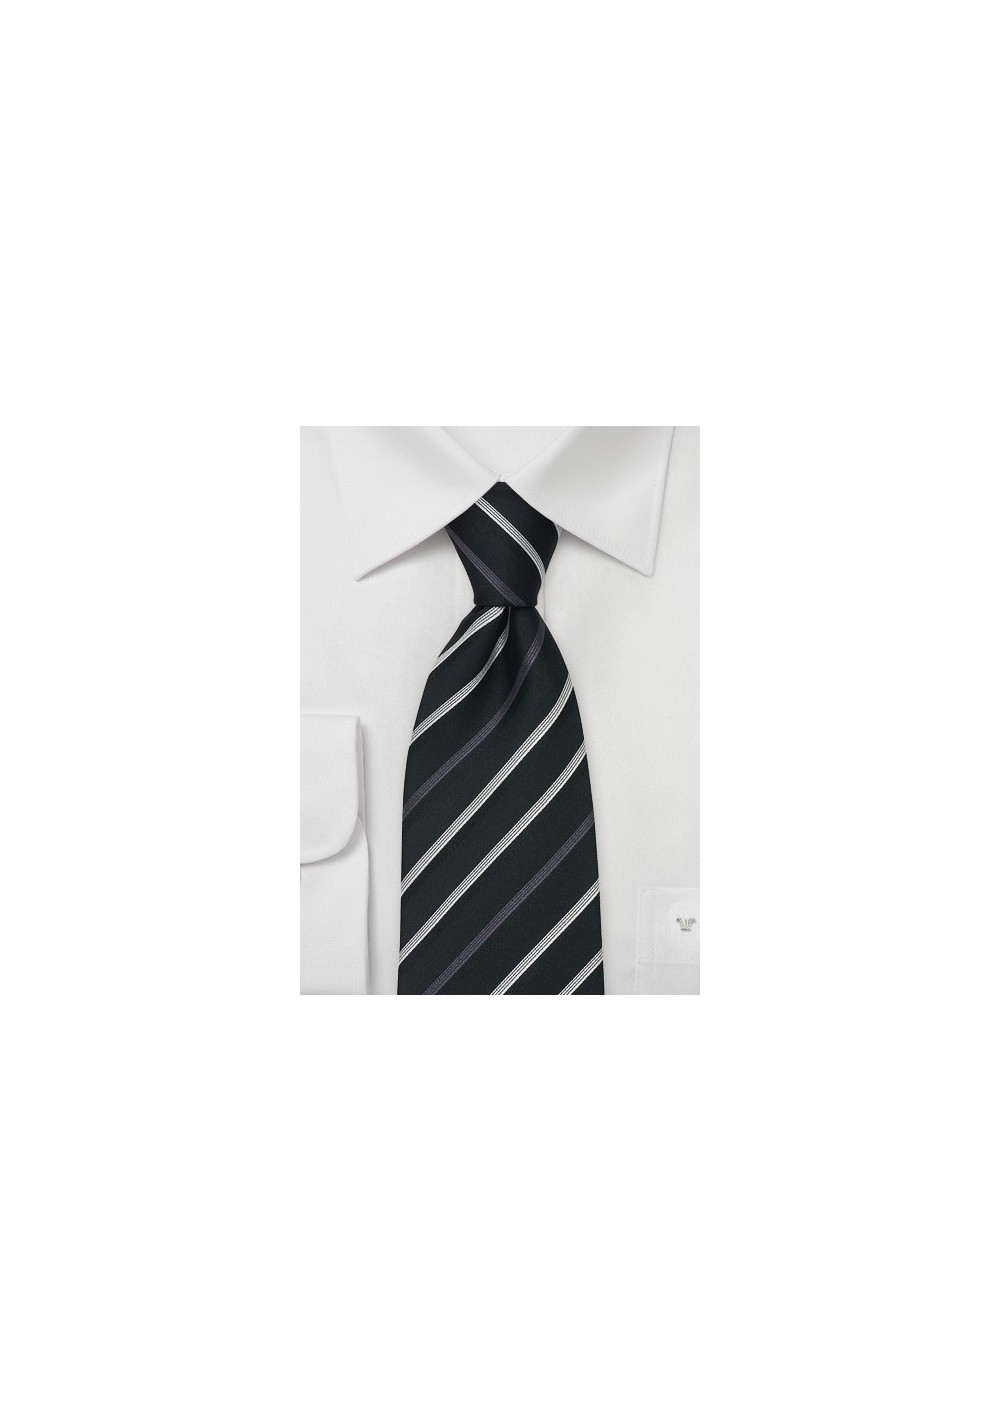 Modern Black Silk Tie by Designer Cavallieri